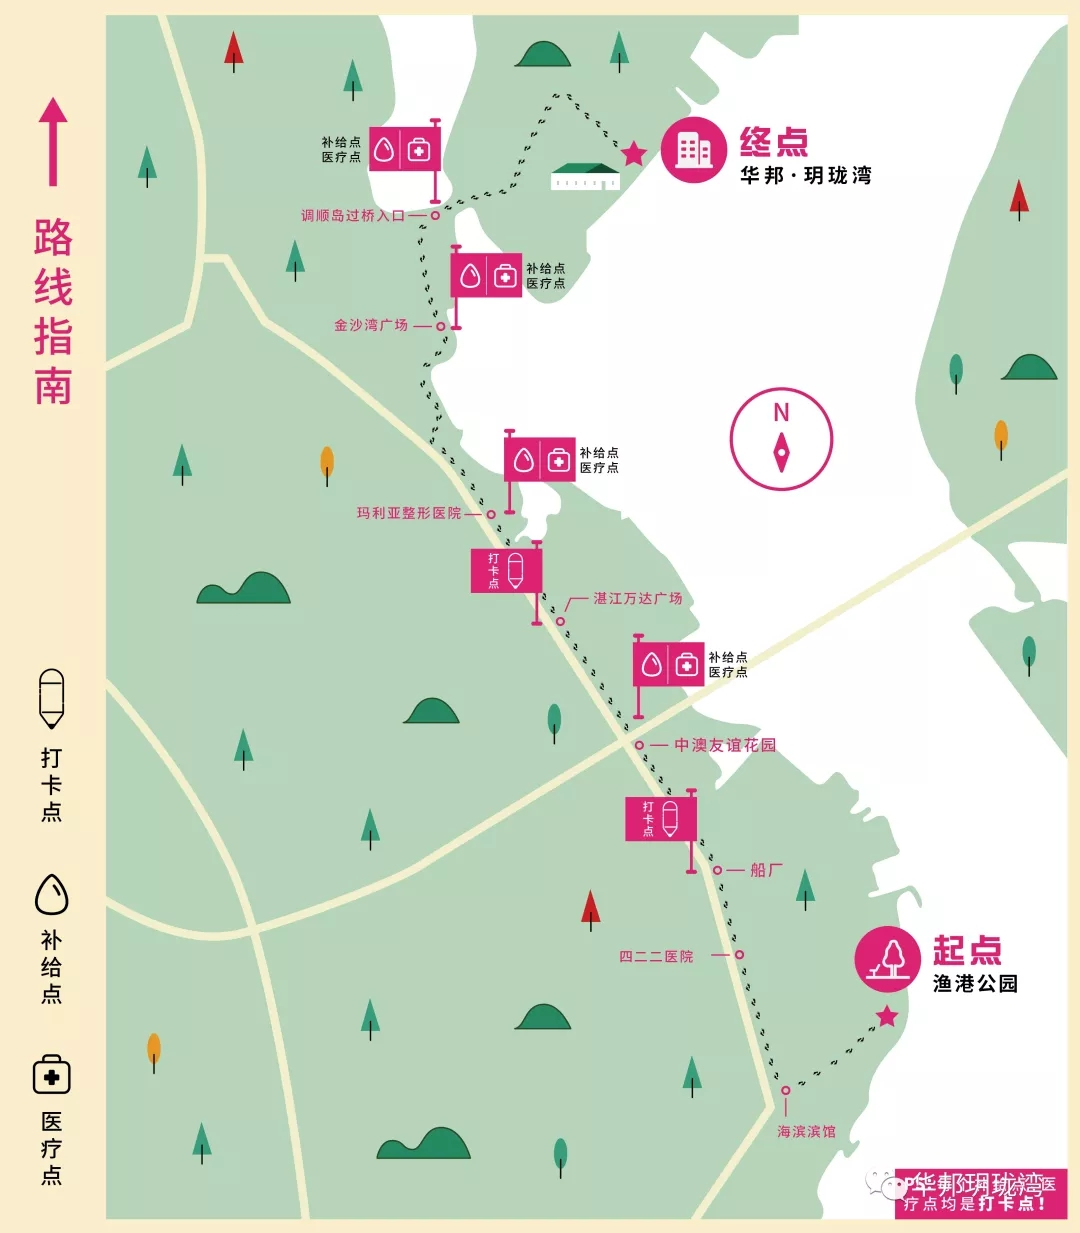 爱湛江就要用脚步去丈量——本周六5000人徒步“热辣”开走